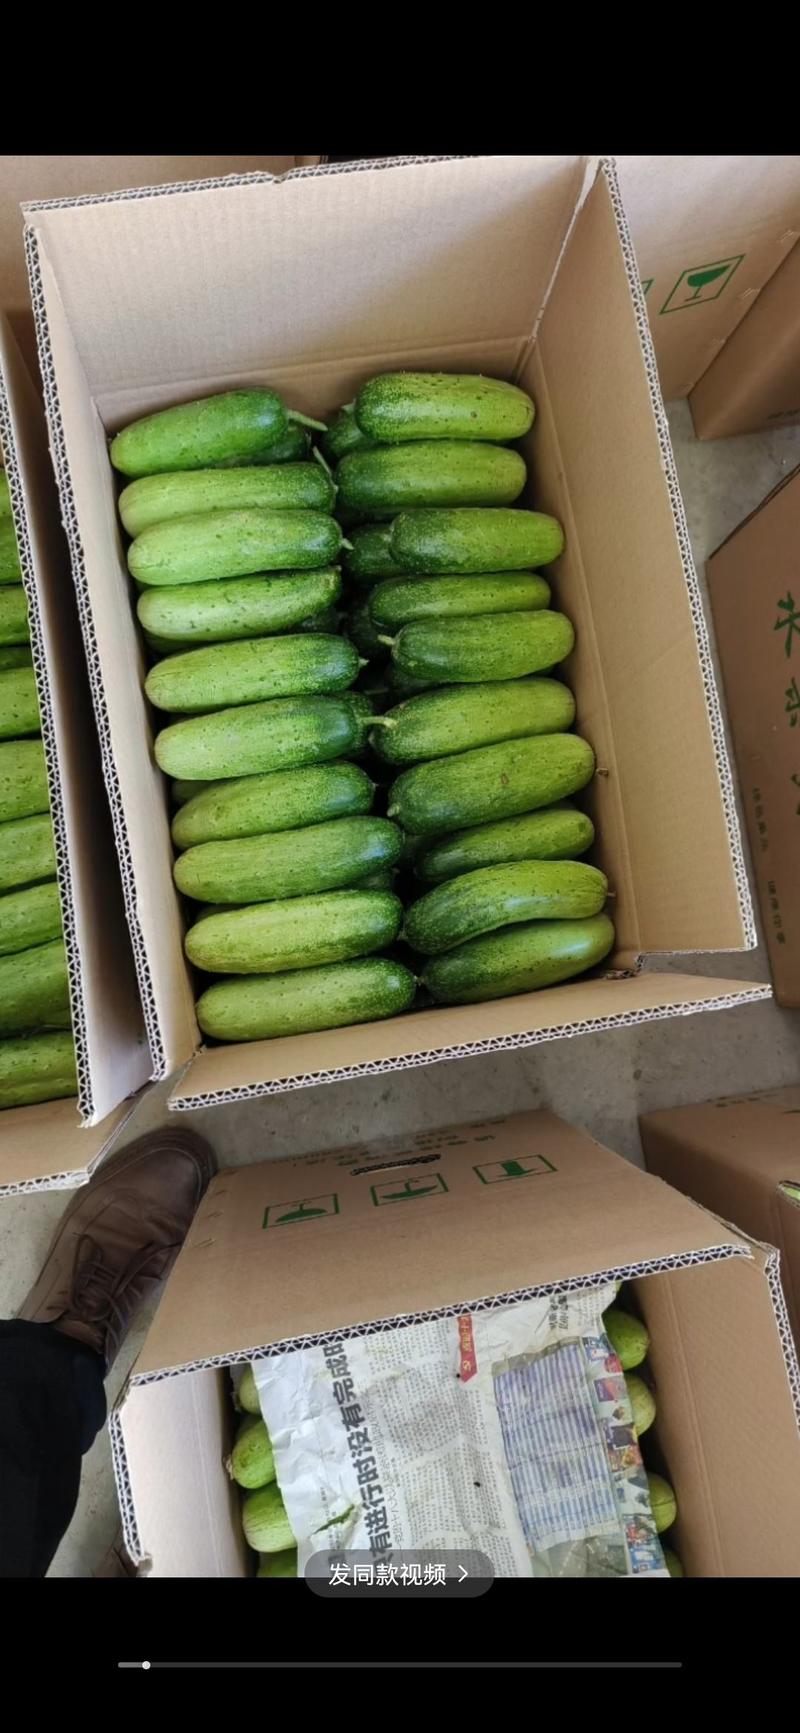 河南水果黄瓜全年不断价格满意为止有纸箱泡沫箱塑料筐保鲜袋